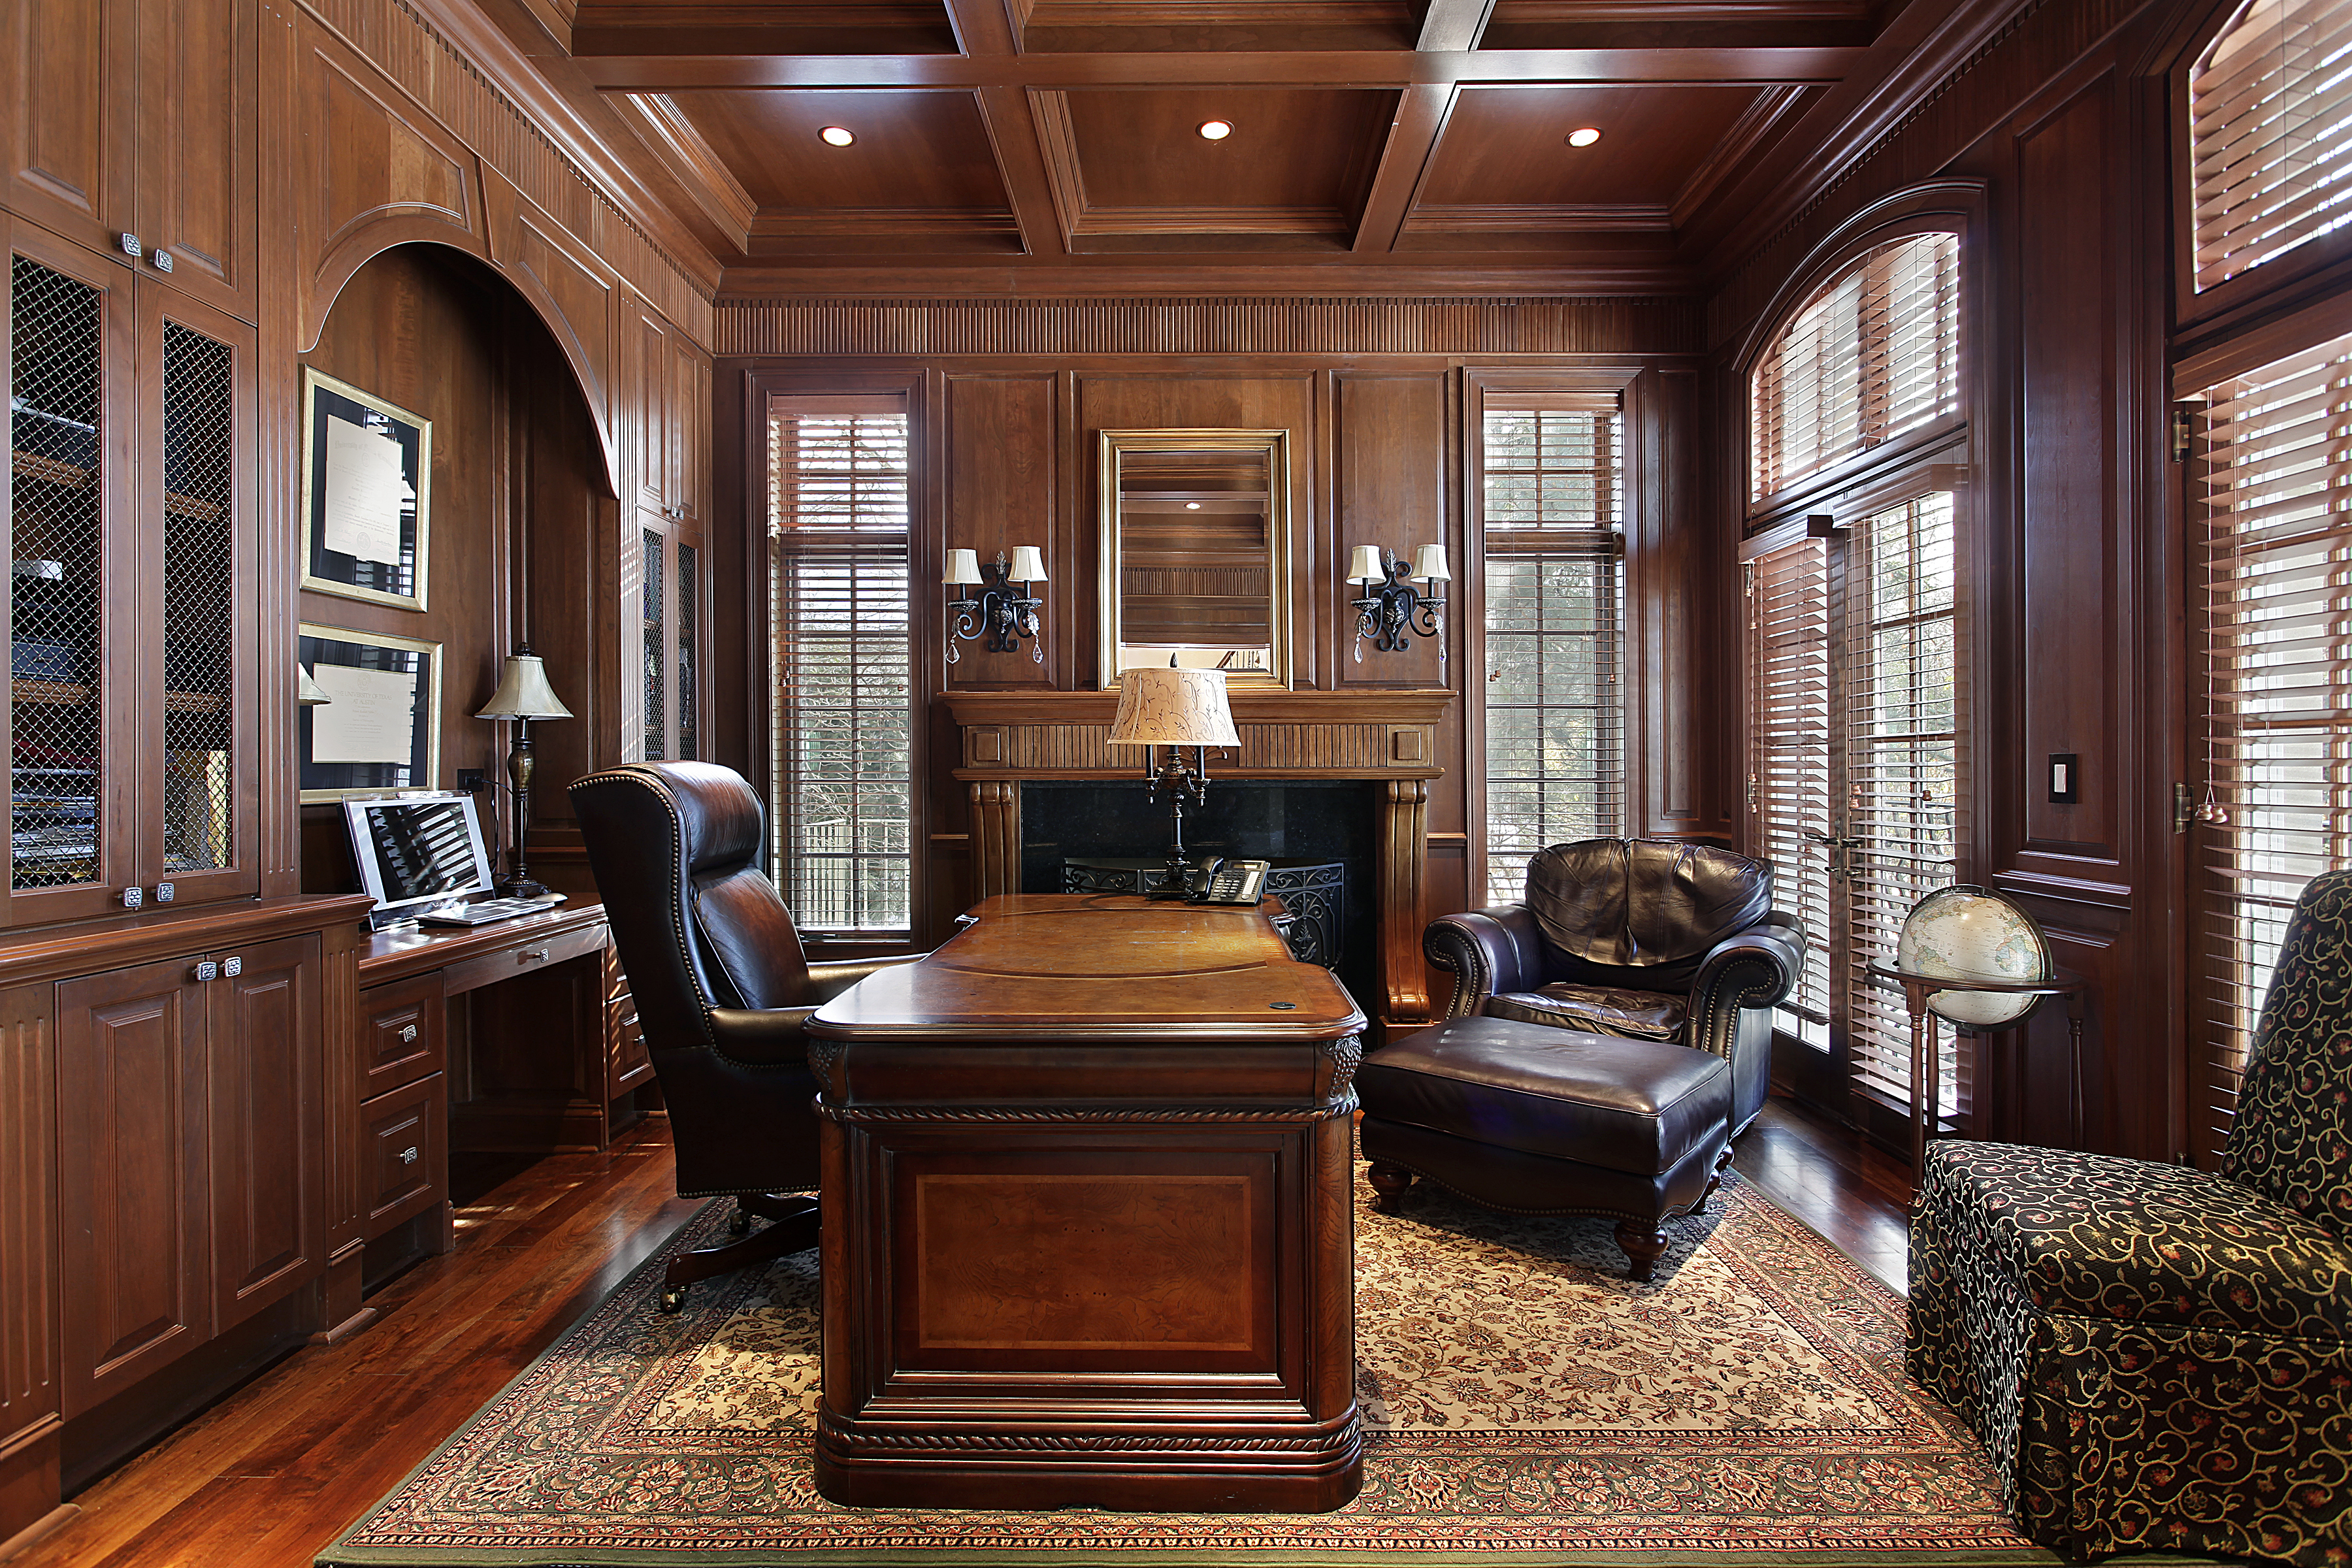 Oficina rica en casa | Fuente: Shutterstock.com